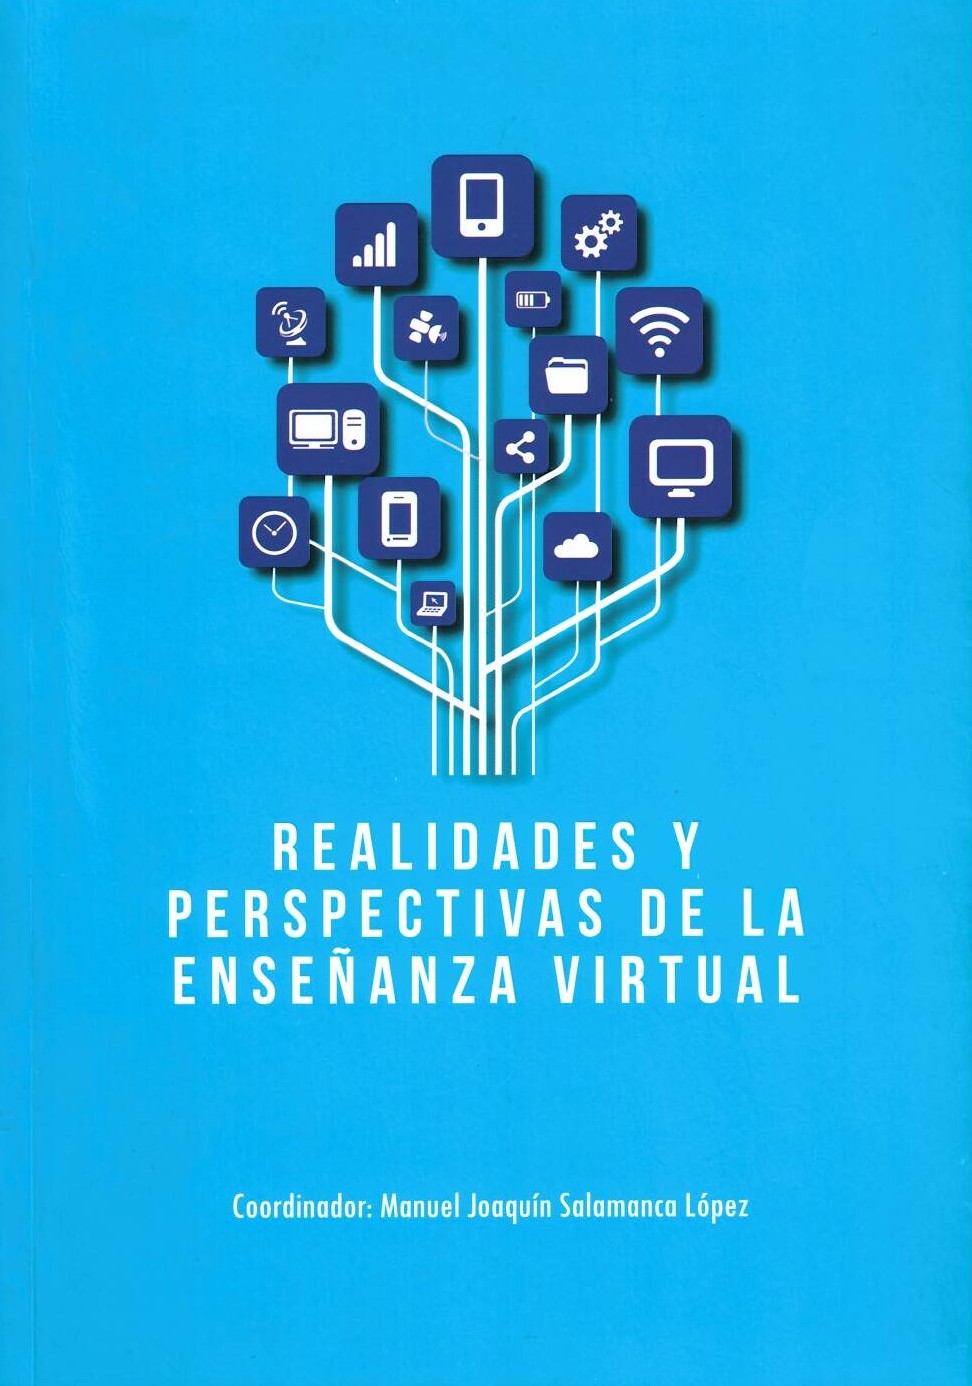 Imagen de portada del libro Realidades y perspectivas de la enseñanza virtual